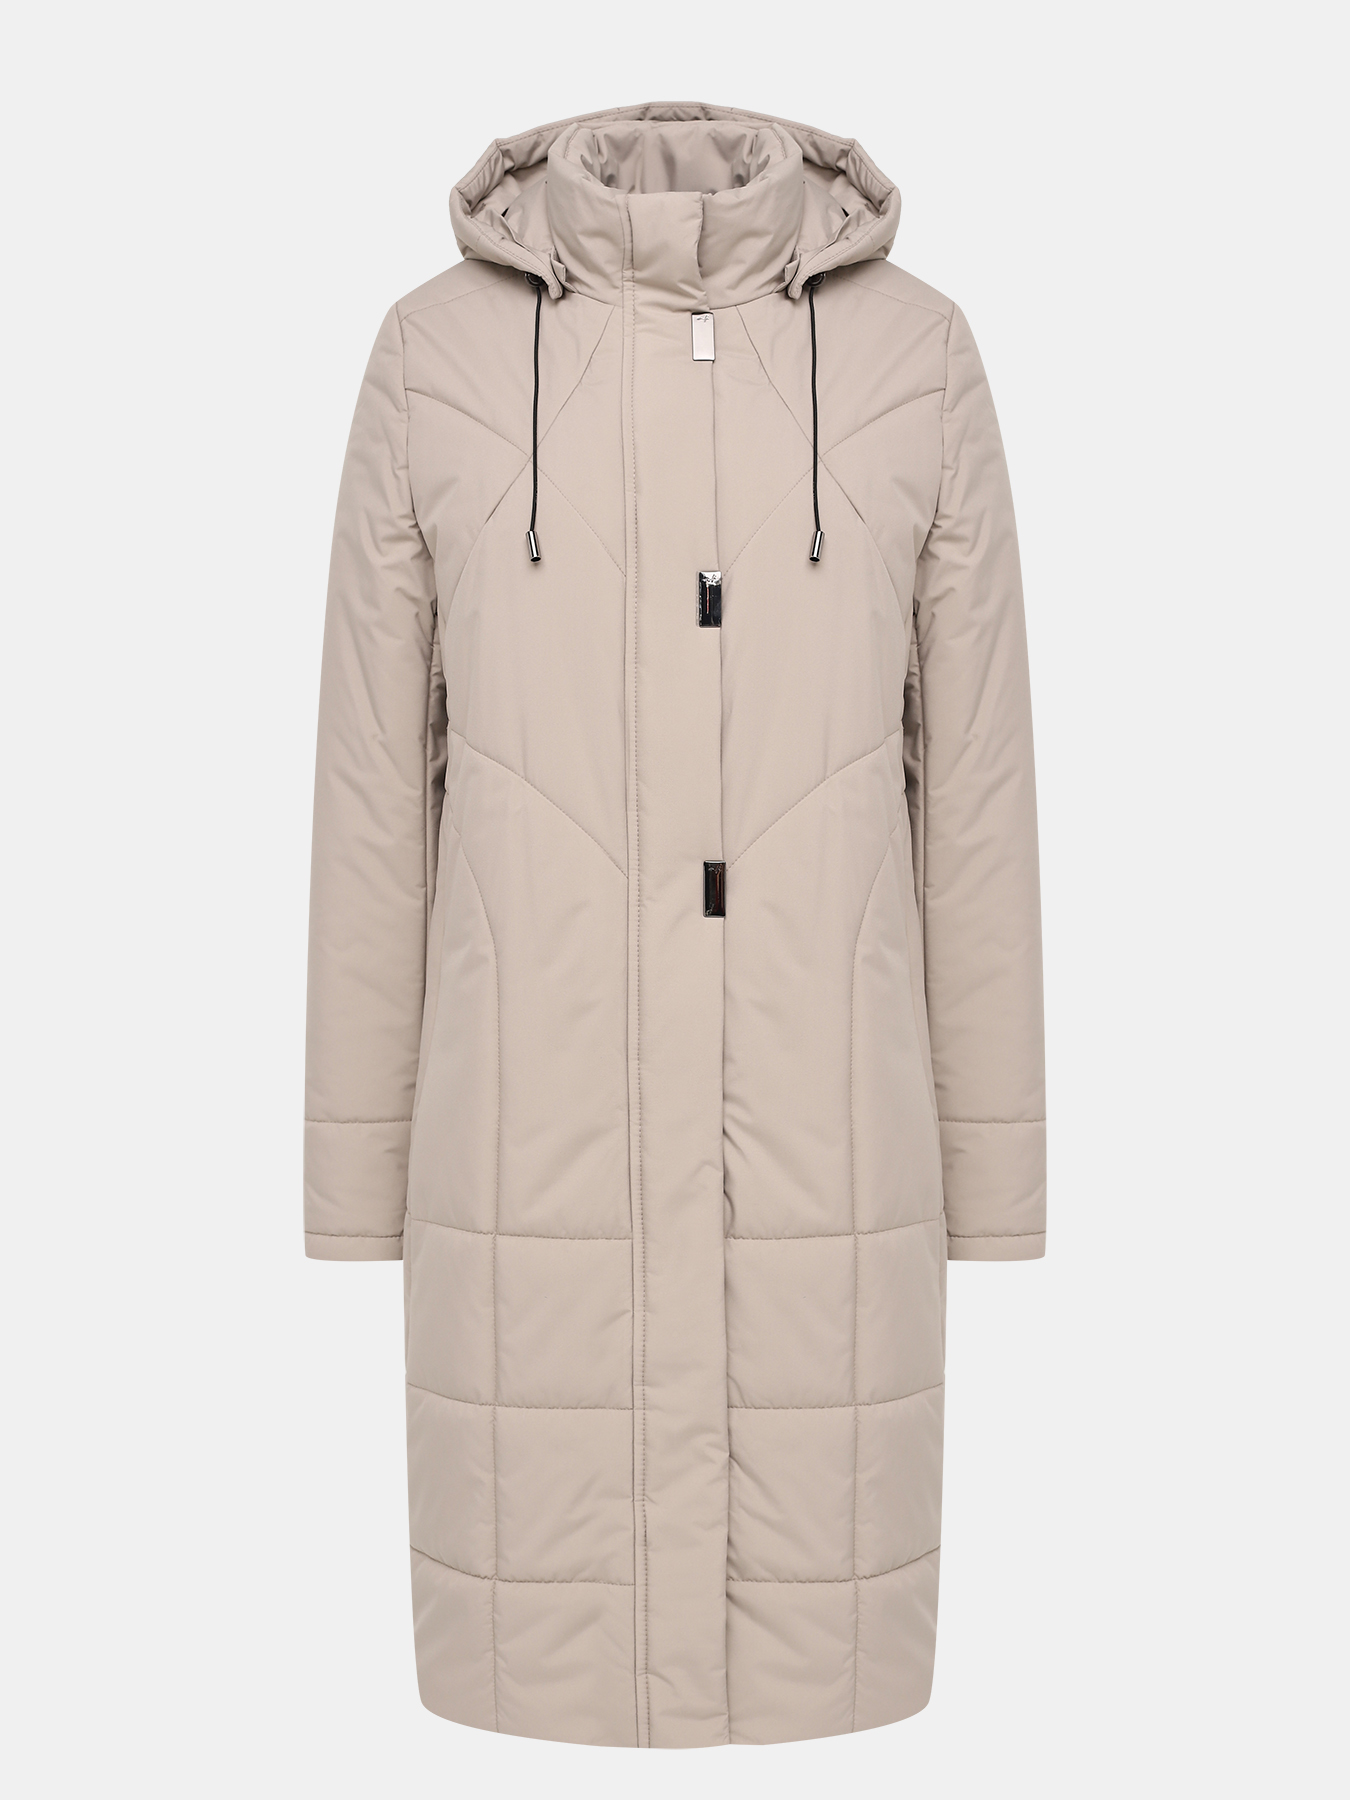 Пальто зимнее Maritta 433644-021, цвет бежевый, размер 46